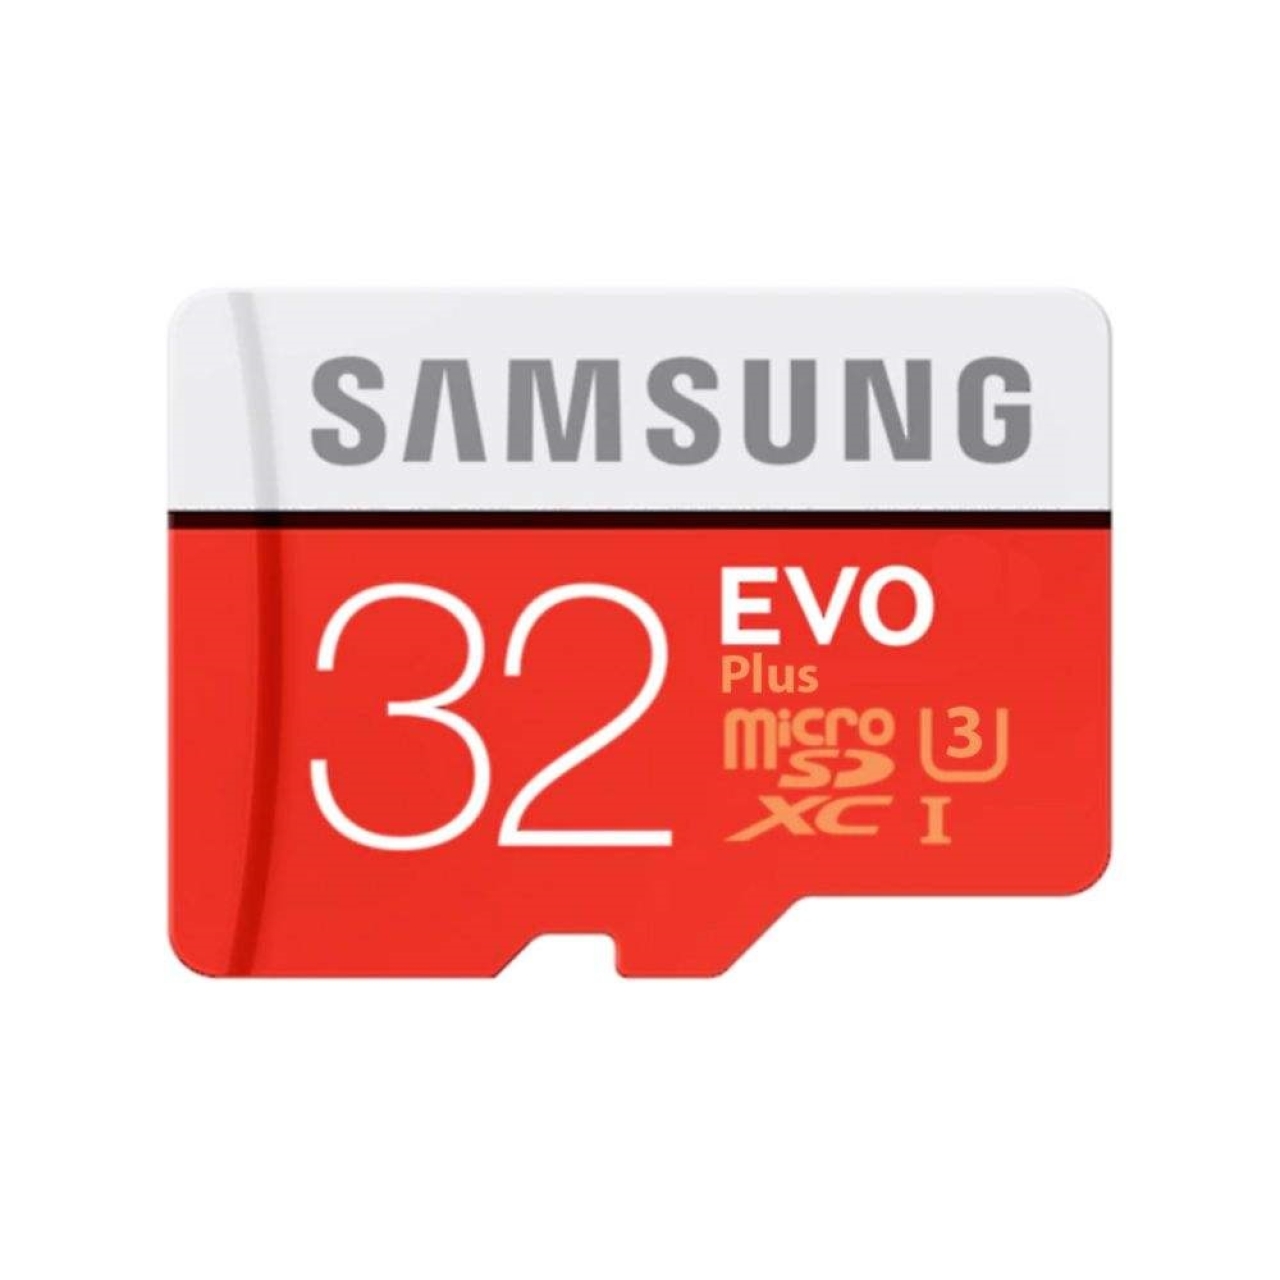 کارت حافظه microSDXC مدل Evo PLUS کلاس 10 استاندارد UHS-I U3 سرعت 80MBps ظرفیت 32 گیگابایت به همراه آداپتور  SD